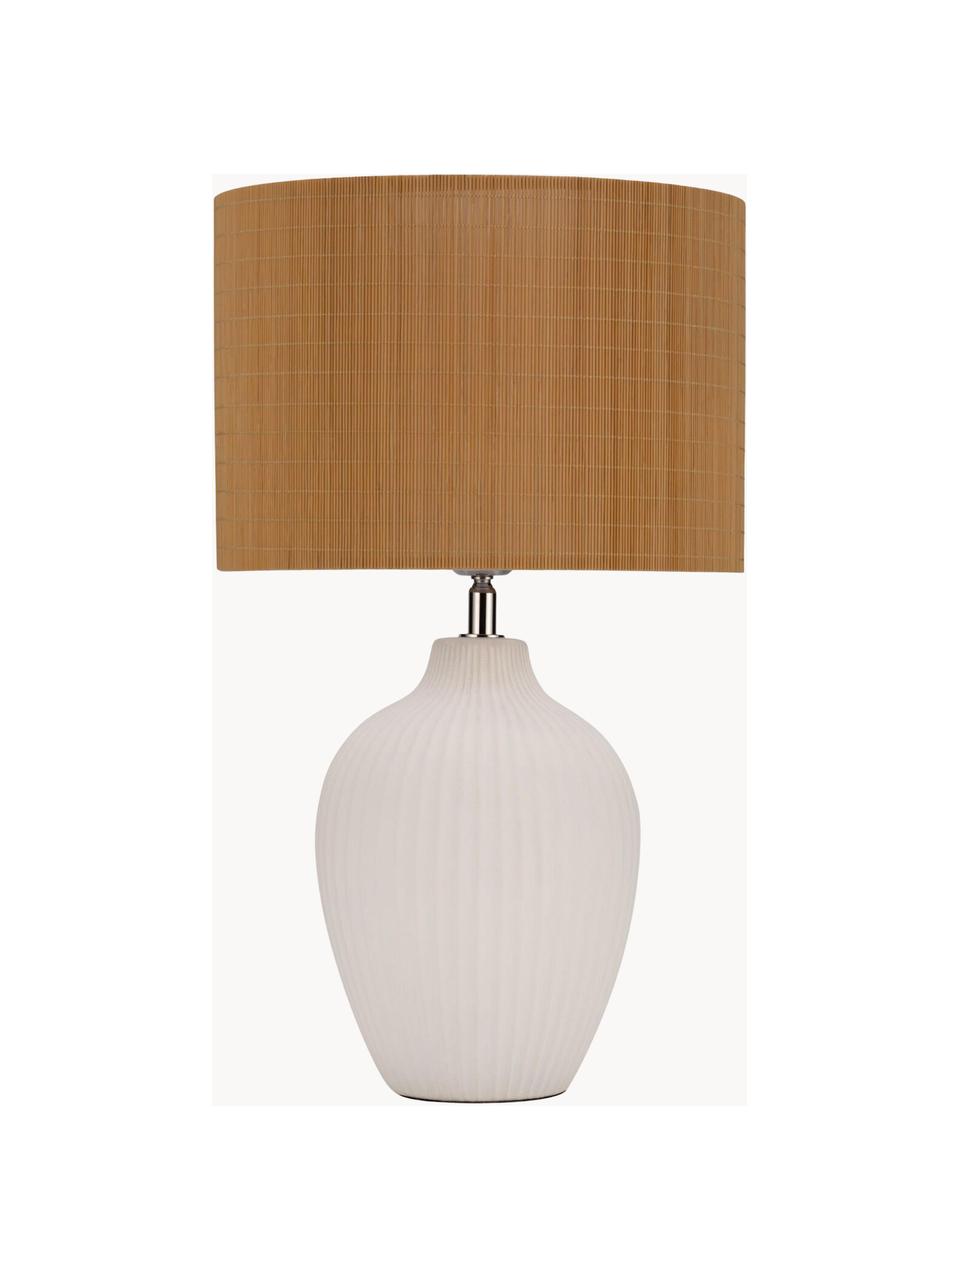 Lámpara de mesa de bambú Timber Glow, Pantalla: bambú, Cable: cubierto en tela, Blanco, marrón, Ø 28 x Al 49 cm